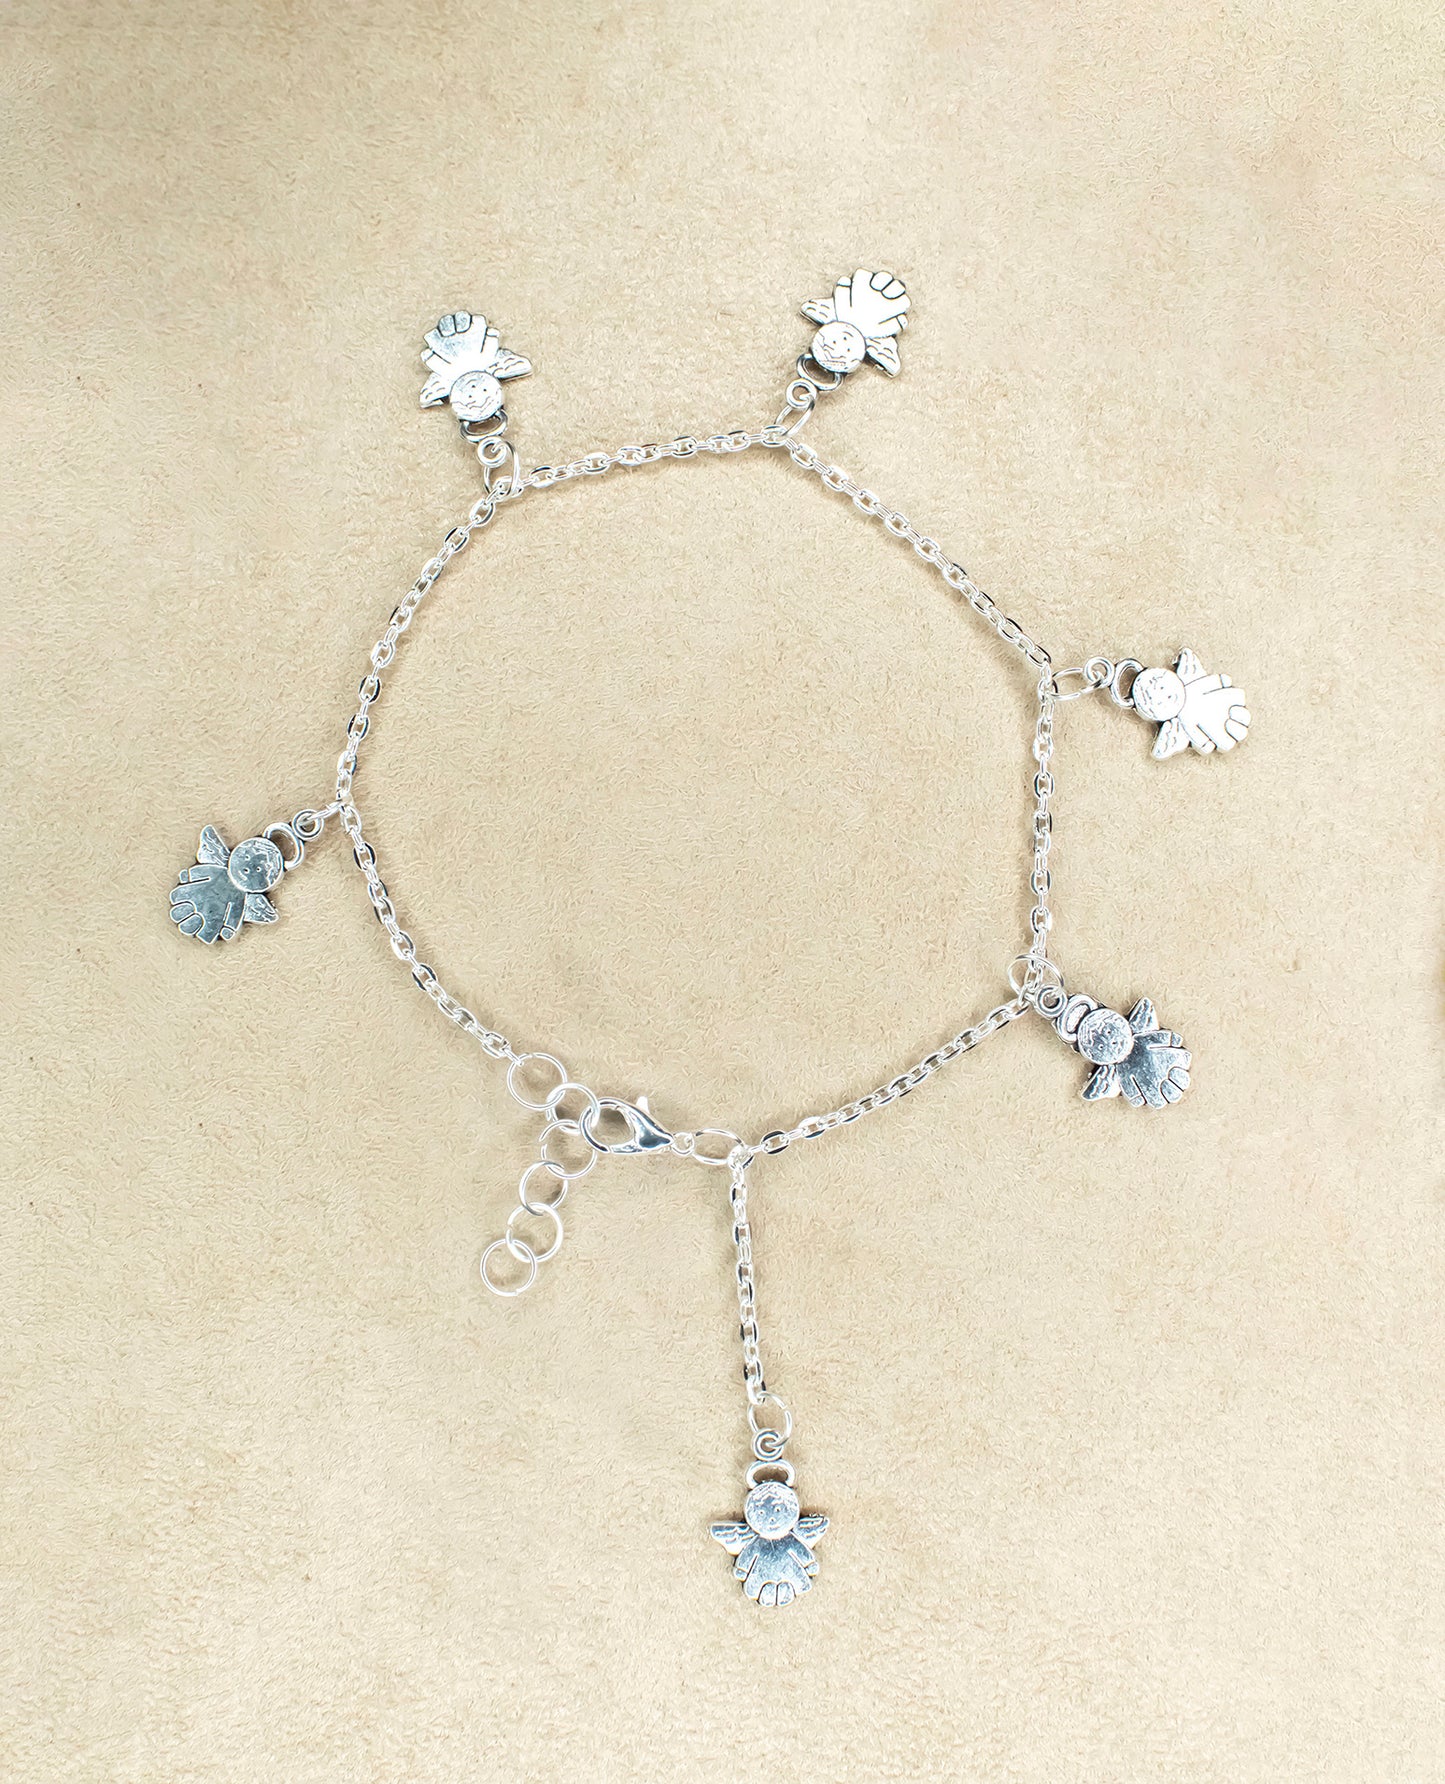 Fairy Bracelet : Handmade